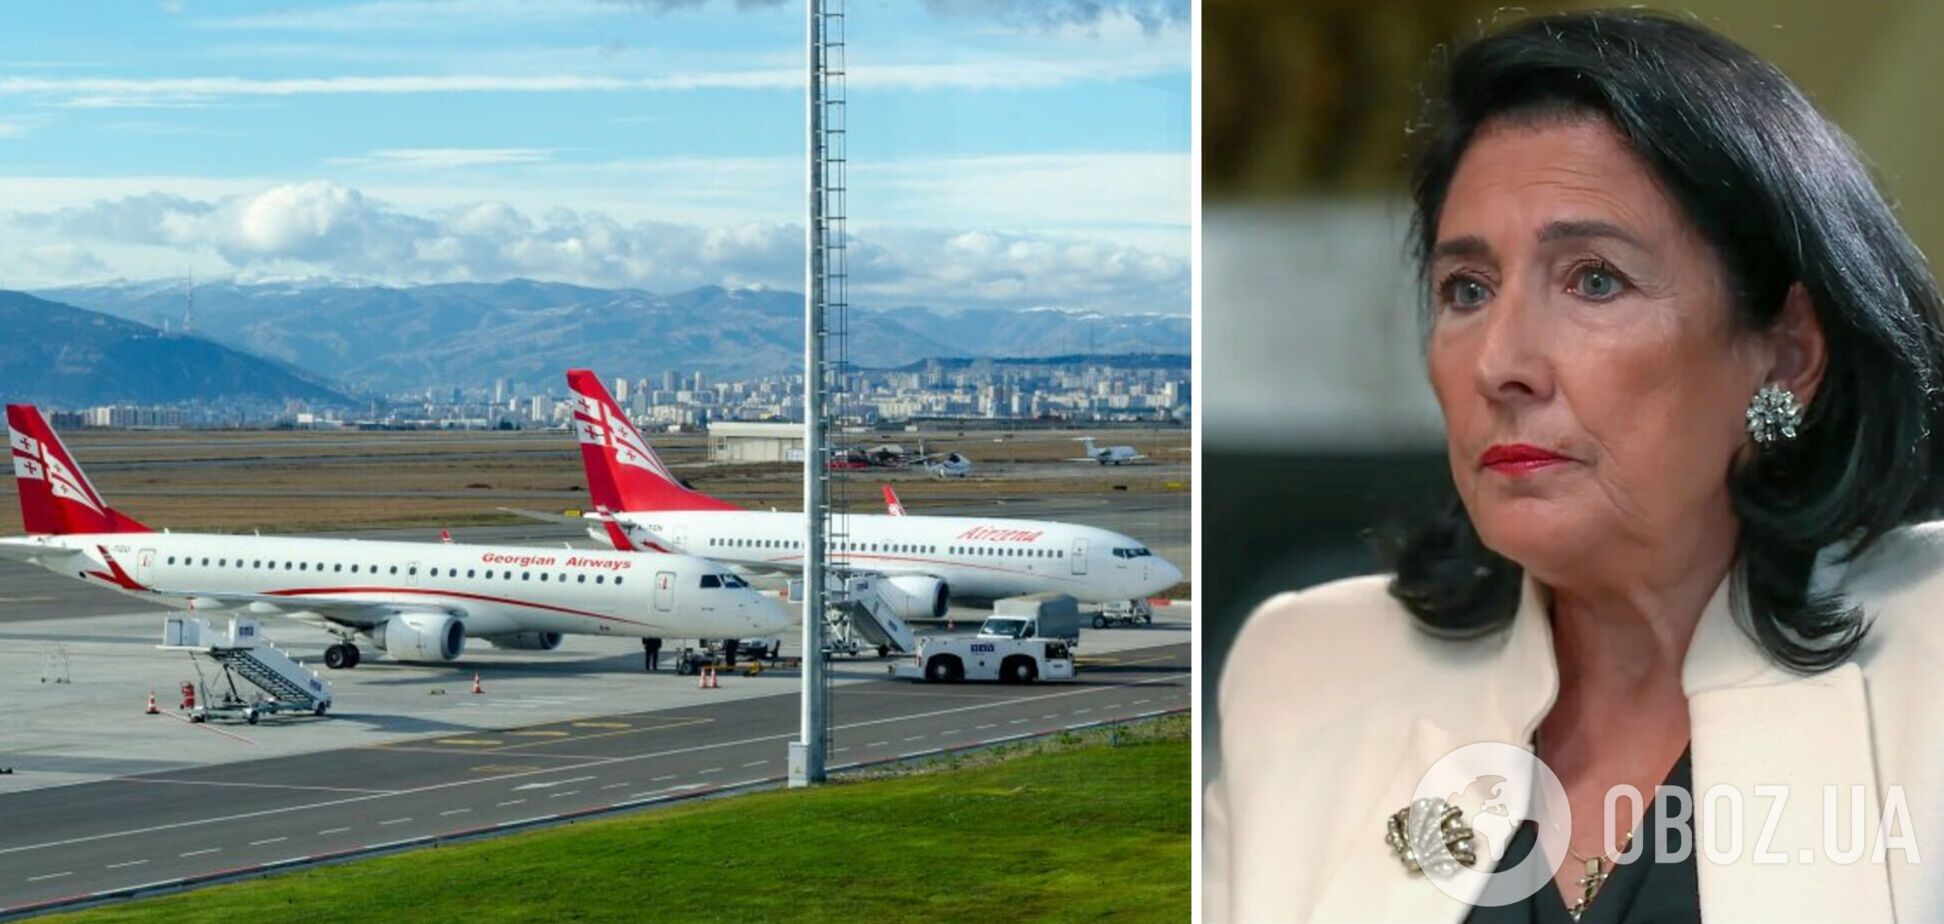 Президент Грузии объявила бойкот авиакомпании Georgian Airways из-за рейсов в РФ: разгорелся скандал